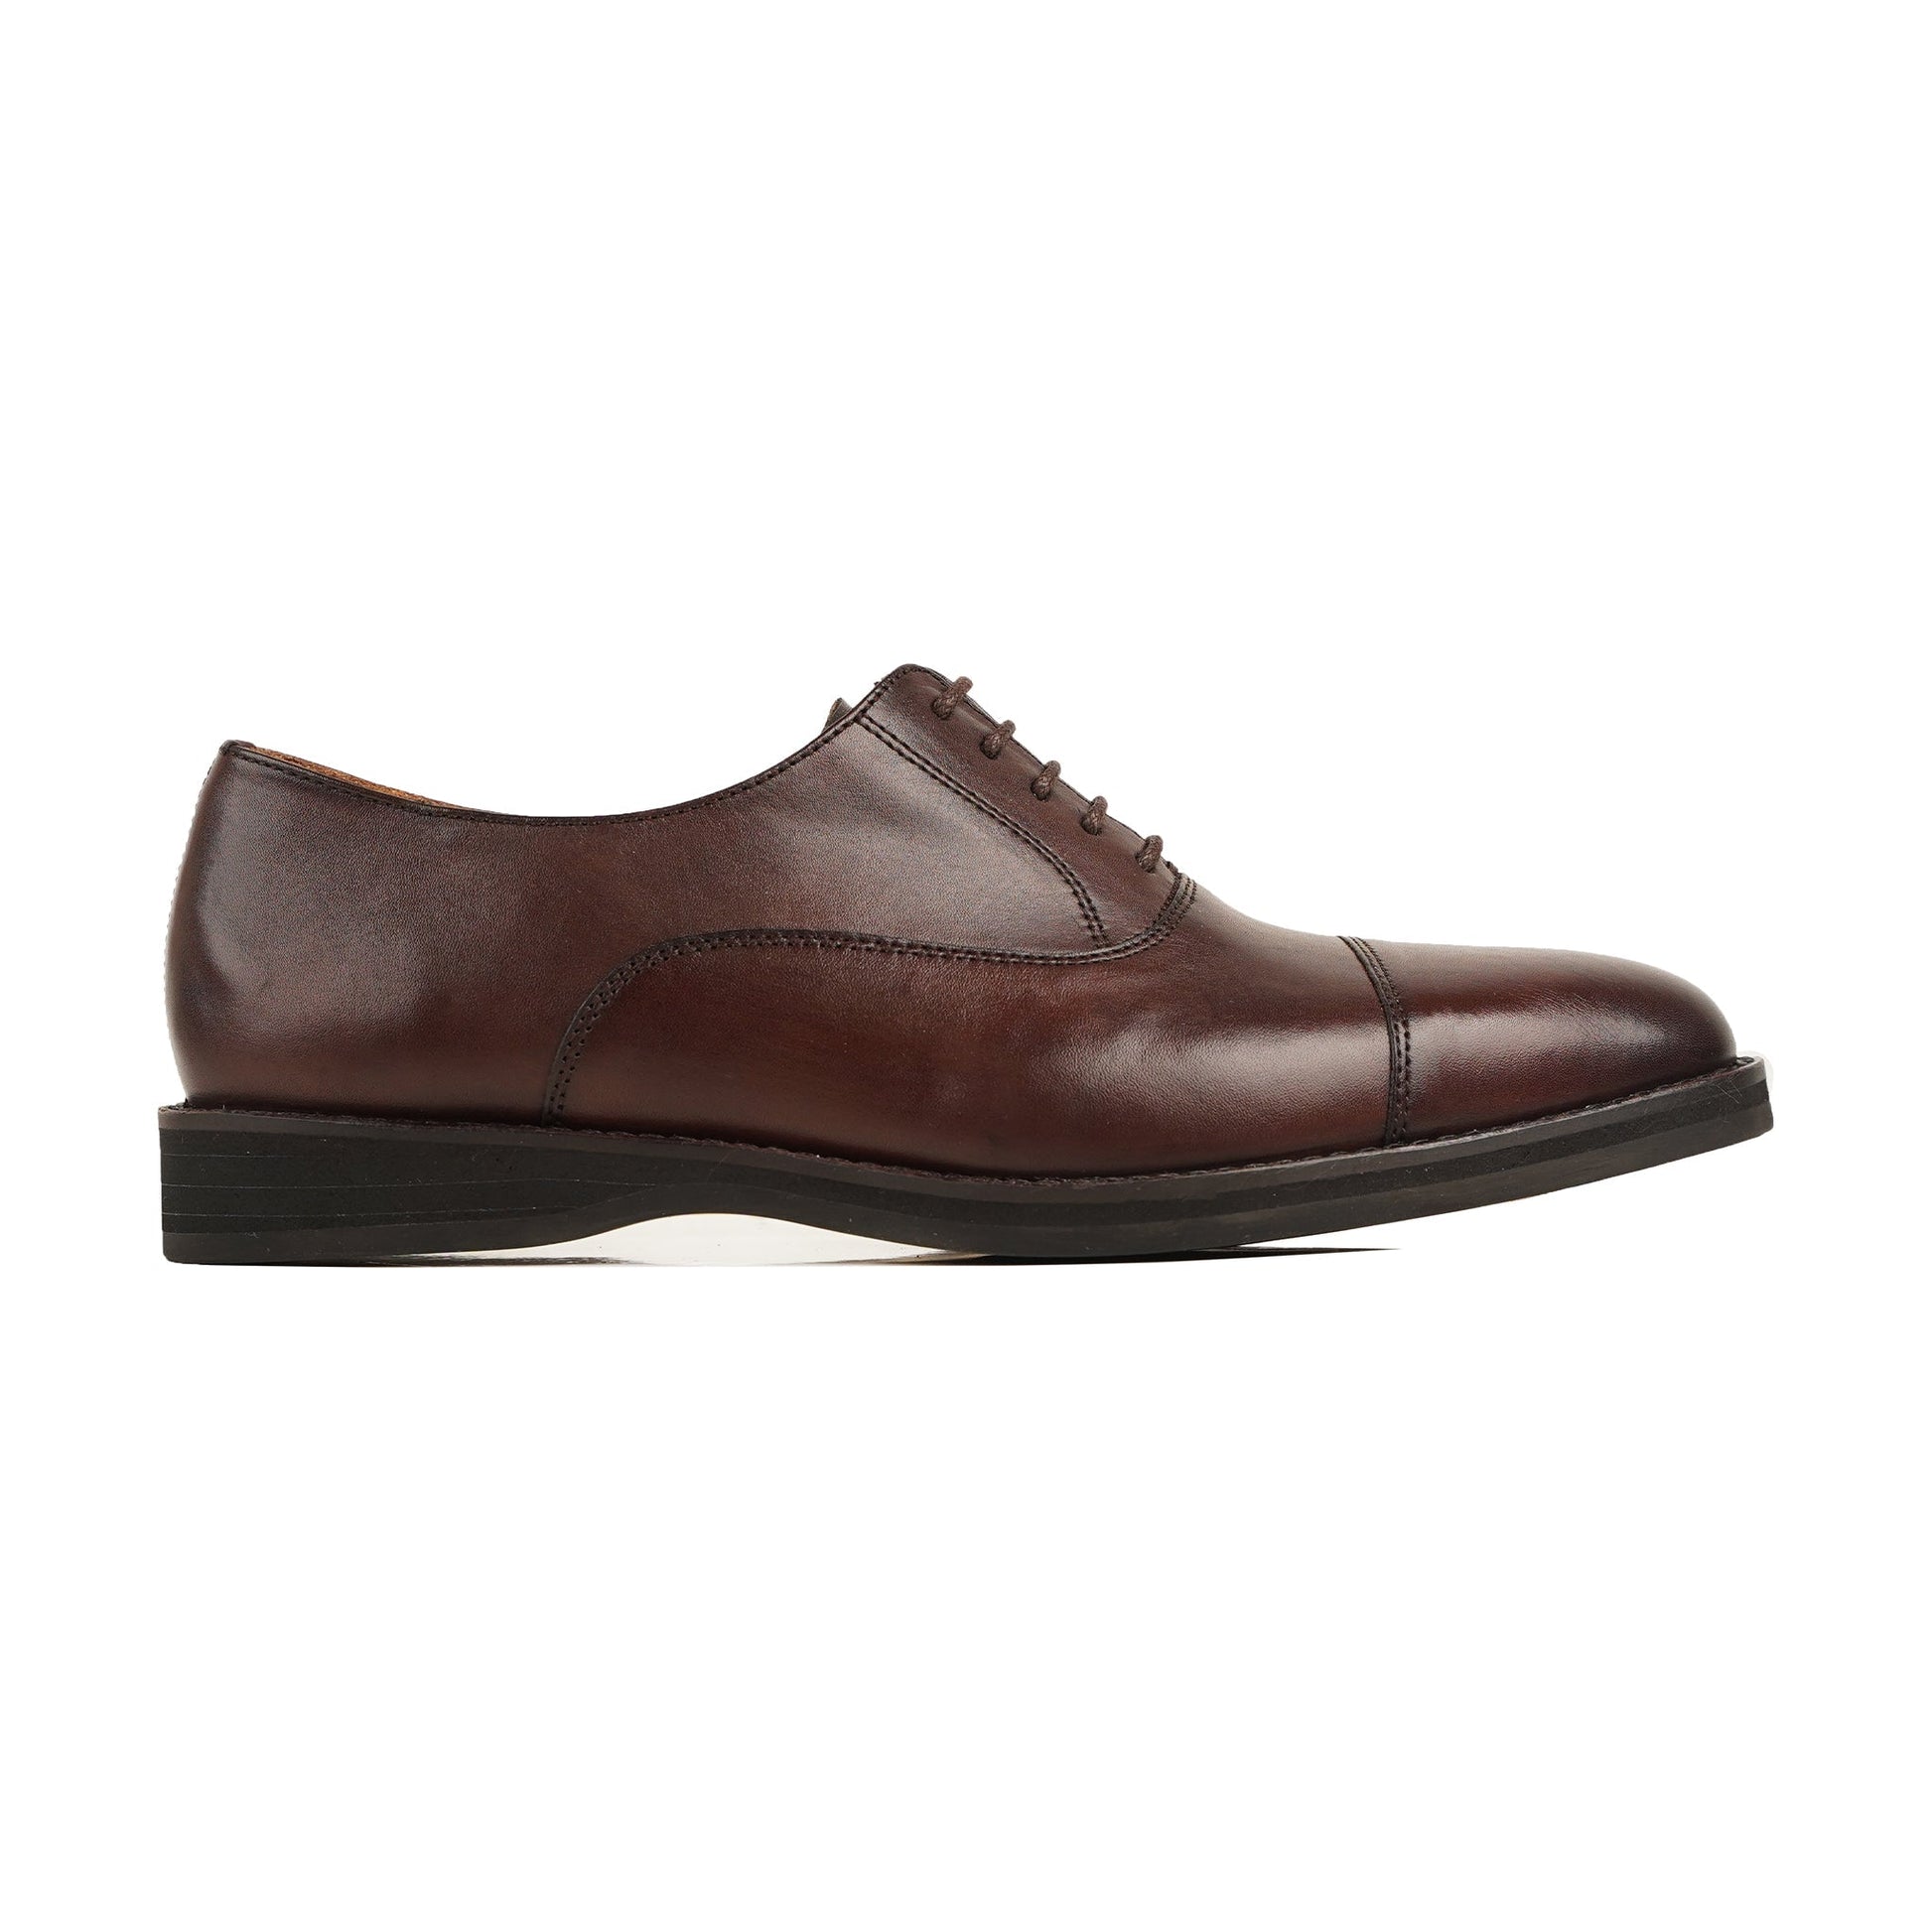 Men's Oxford Shoes | Men's Leather Oxford Shoes Leather Boots, Men's Leather Oxford Shoes, Men's Oxford Shoes